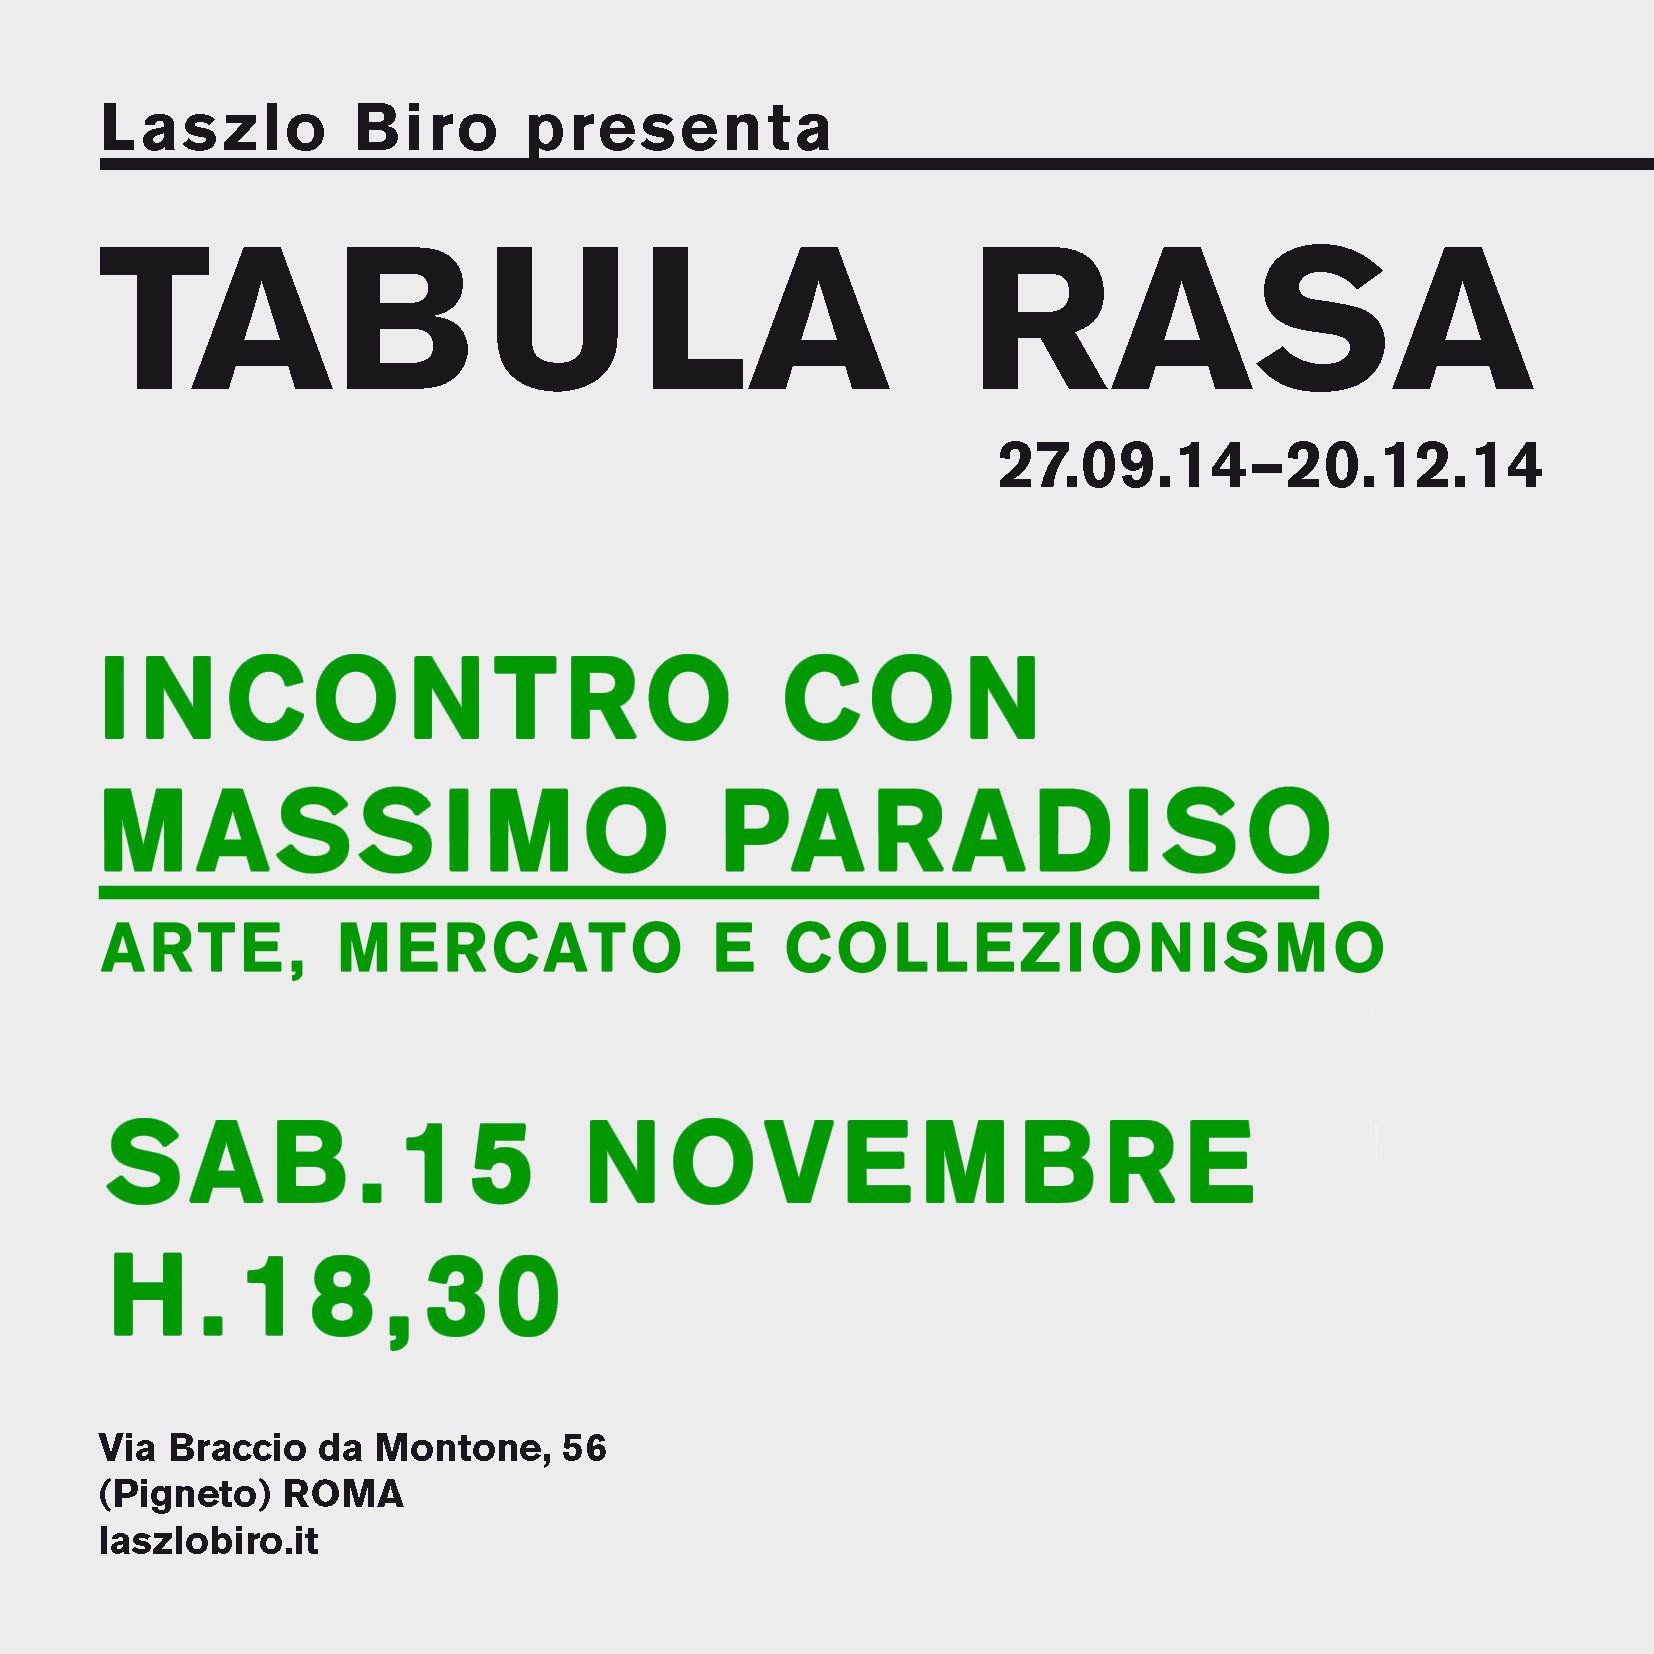 Tabula rasa - Massimo Paradiso